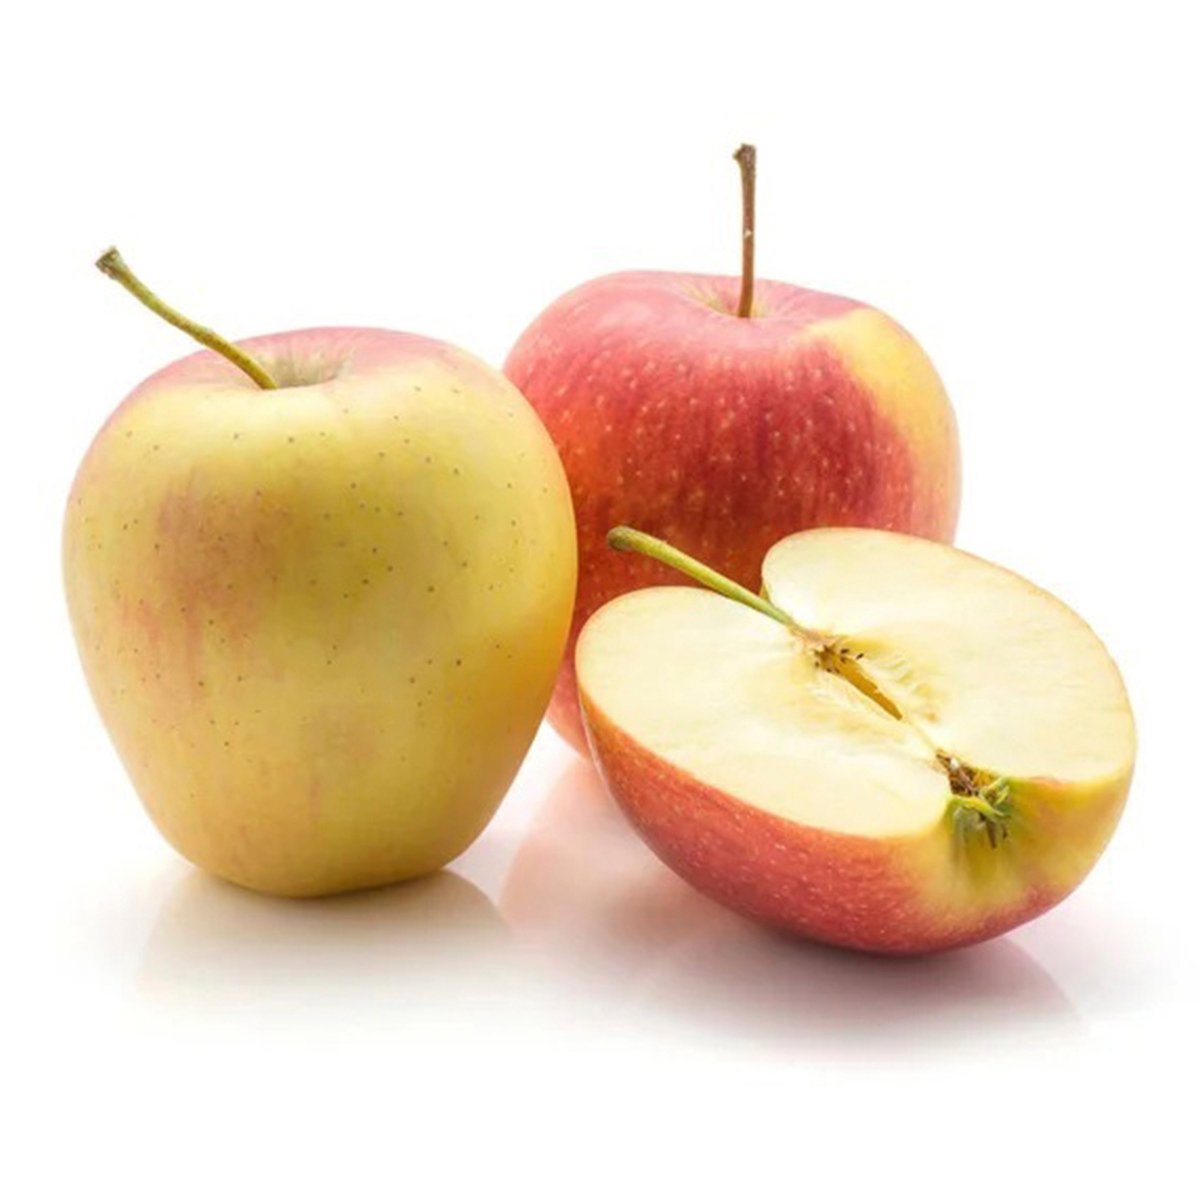 Buy Apple Evelina Italy 1 kg Online at Best Price | Apples | Lulu UAE in Saudi Arabia